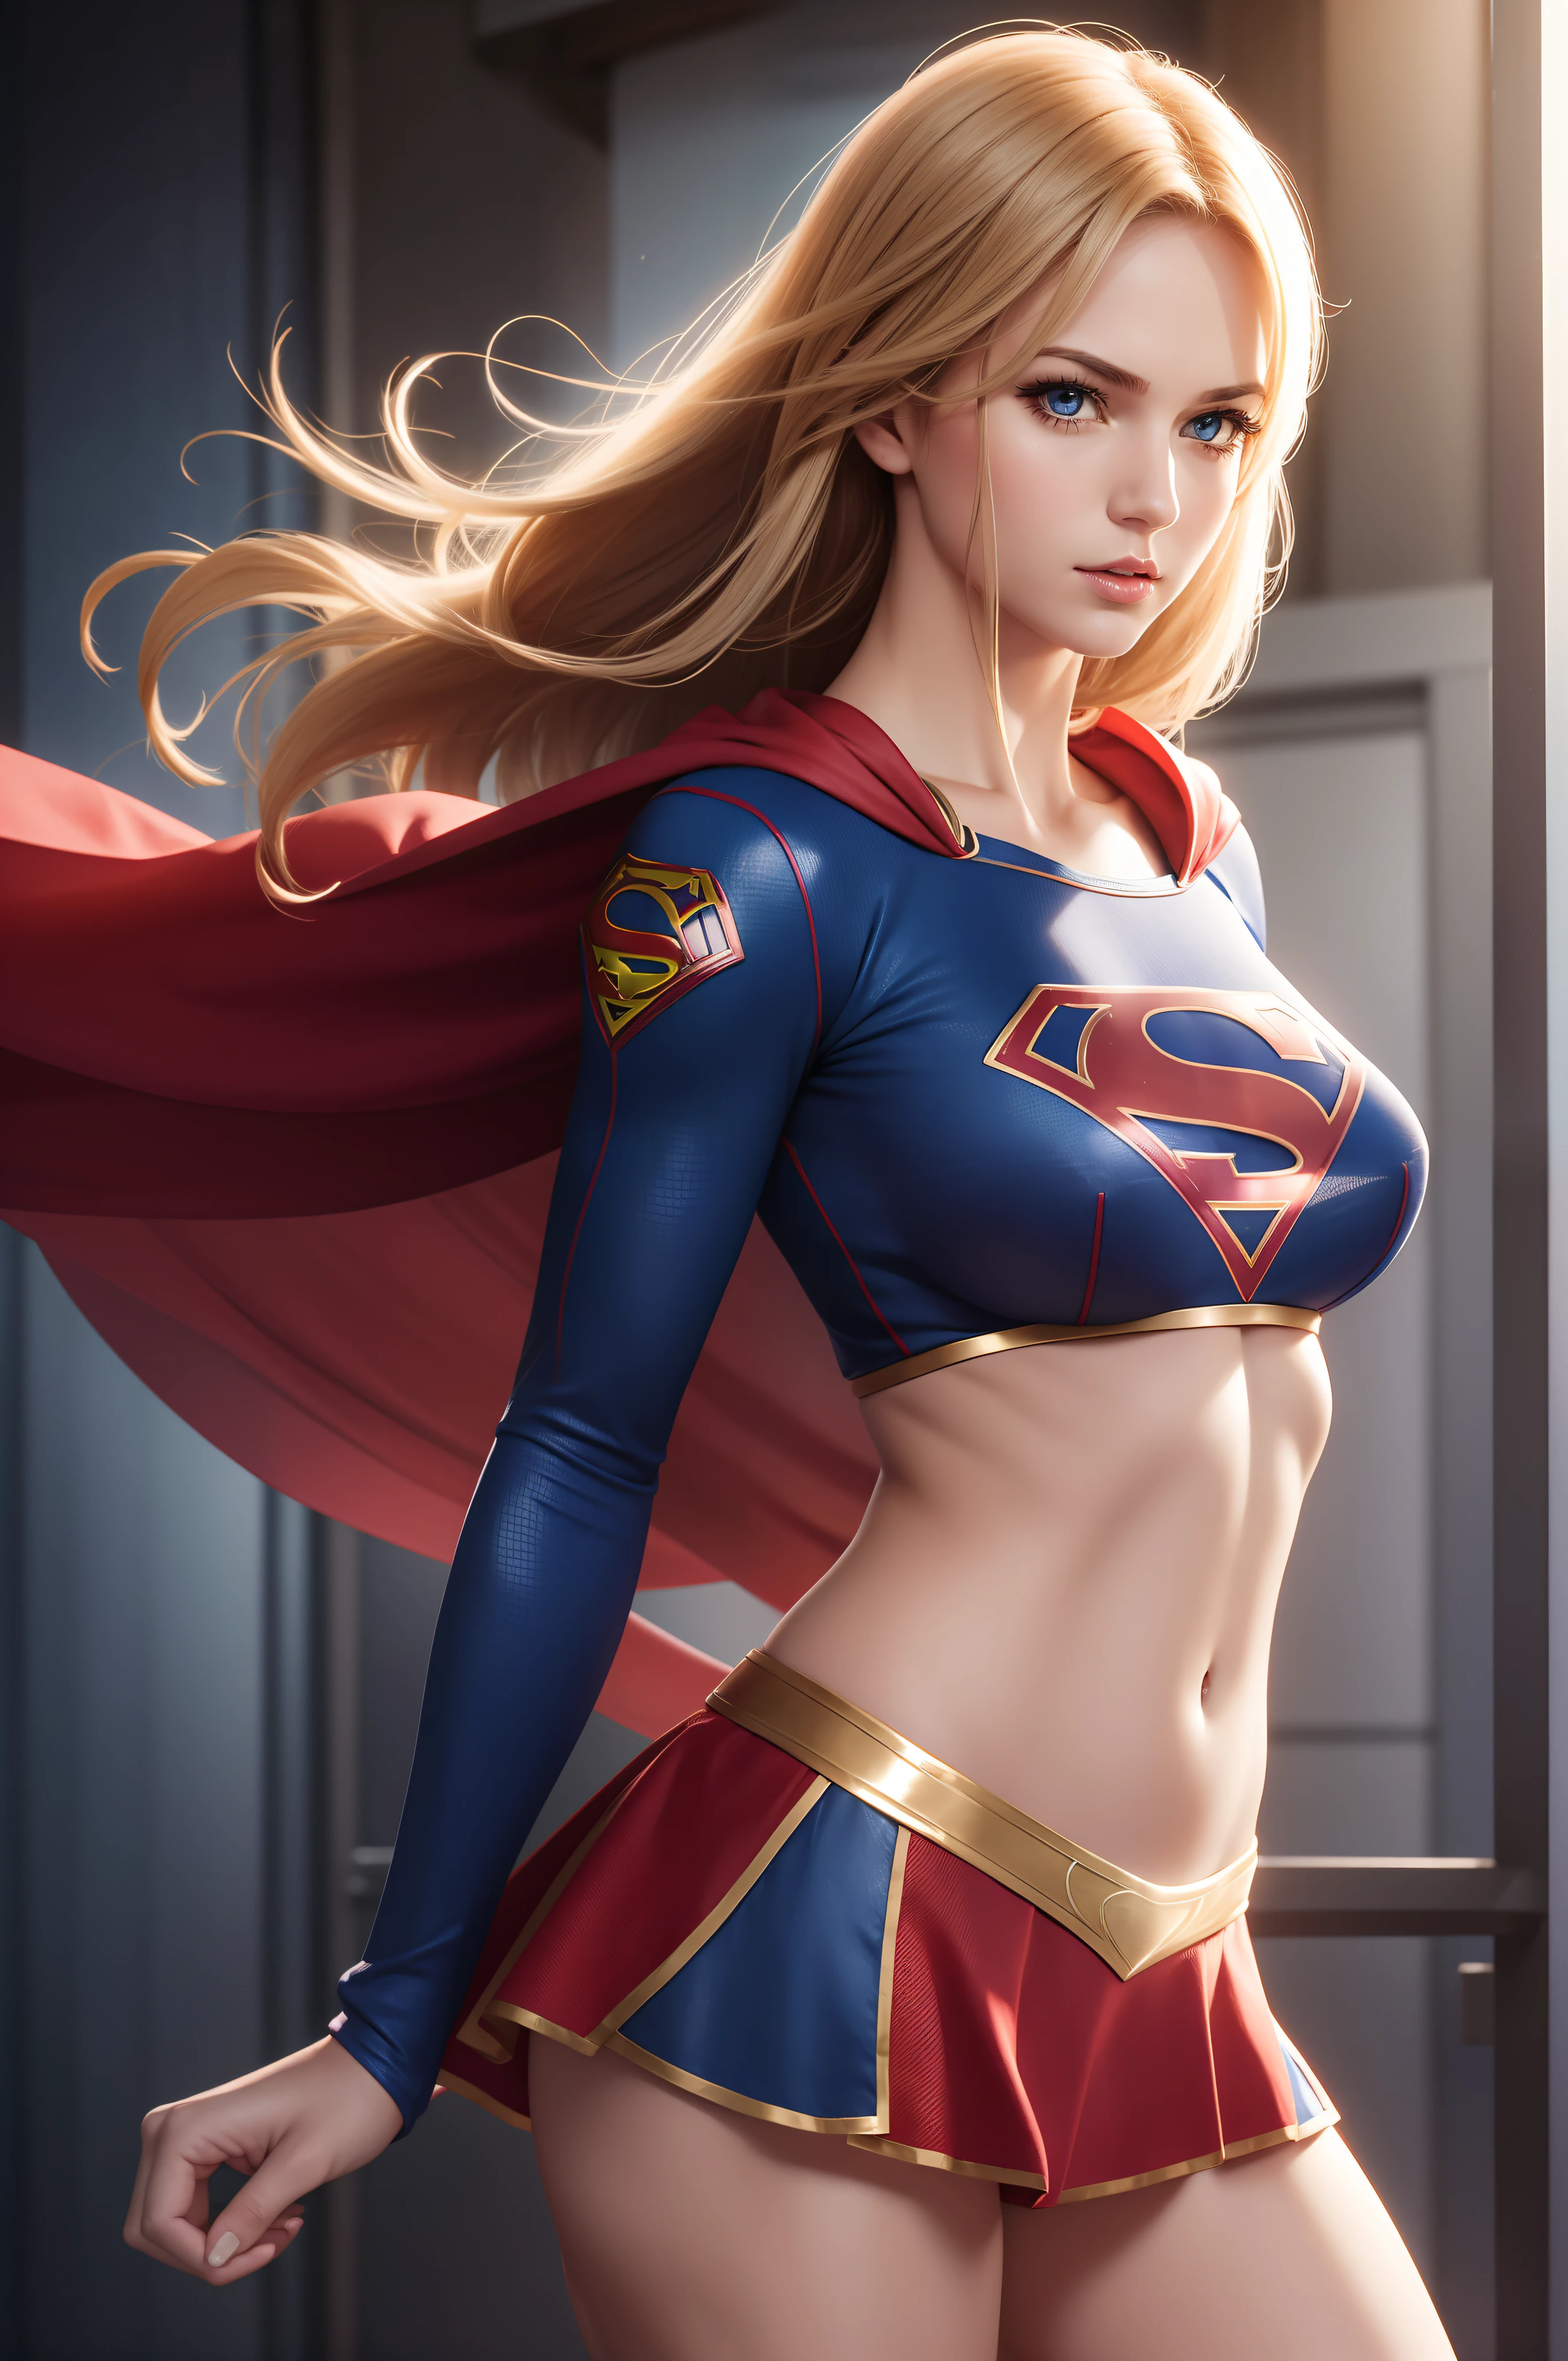 セクシー Supergirl in midriff costume, 側面図,  運動能力があり健康な体, いたずら, 淫乱な, 完璧な手, 細かい手, 完璧な目, 細かい目,  軽薄な, セクシー, いたずら, ポーズ, 手と腕を横に, 大きくて元気な , 現実的, 高解像度, 超高解像度, 動的